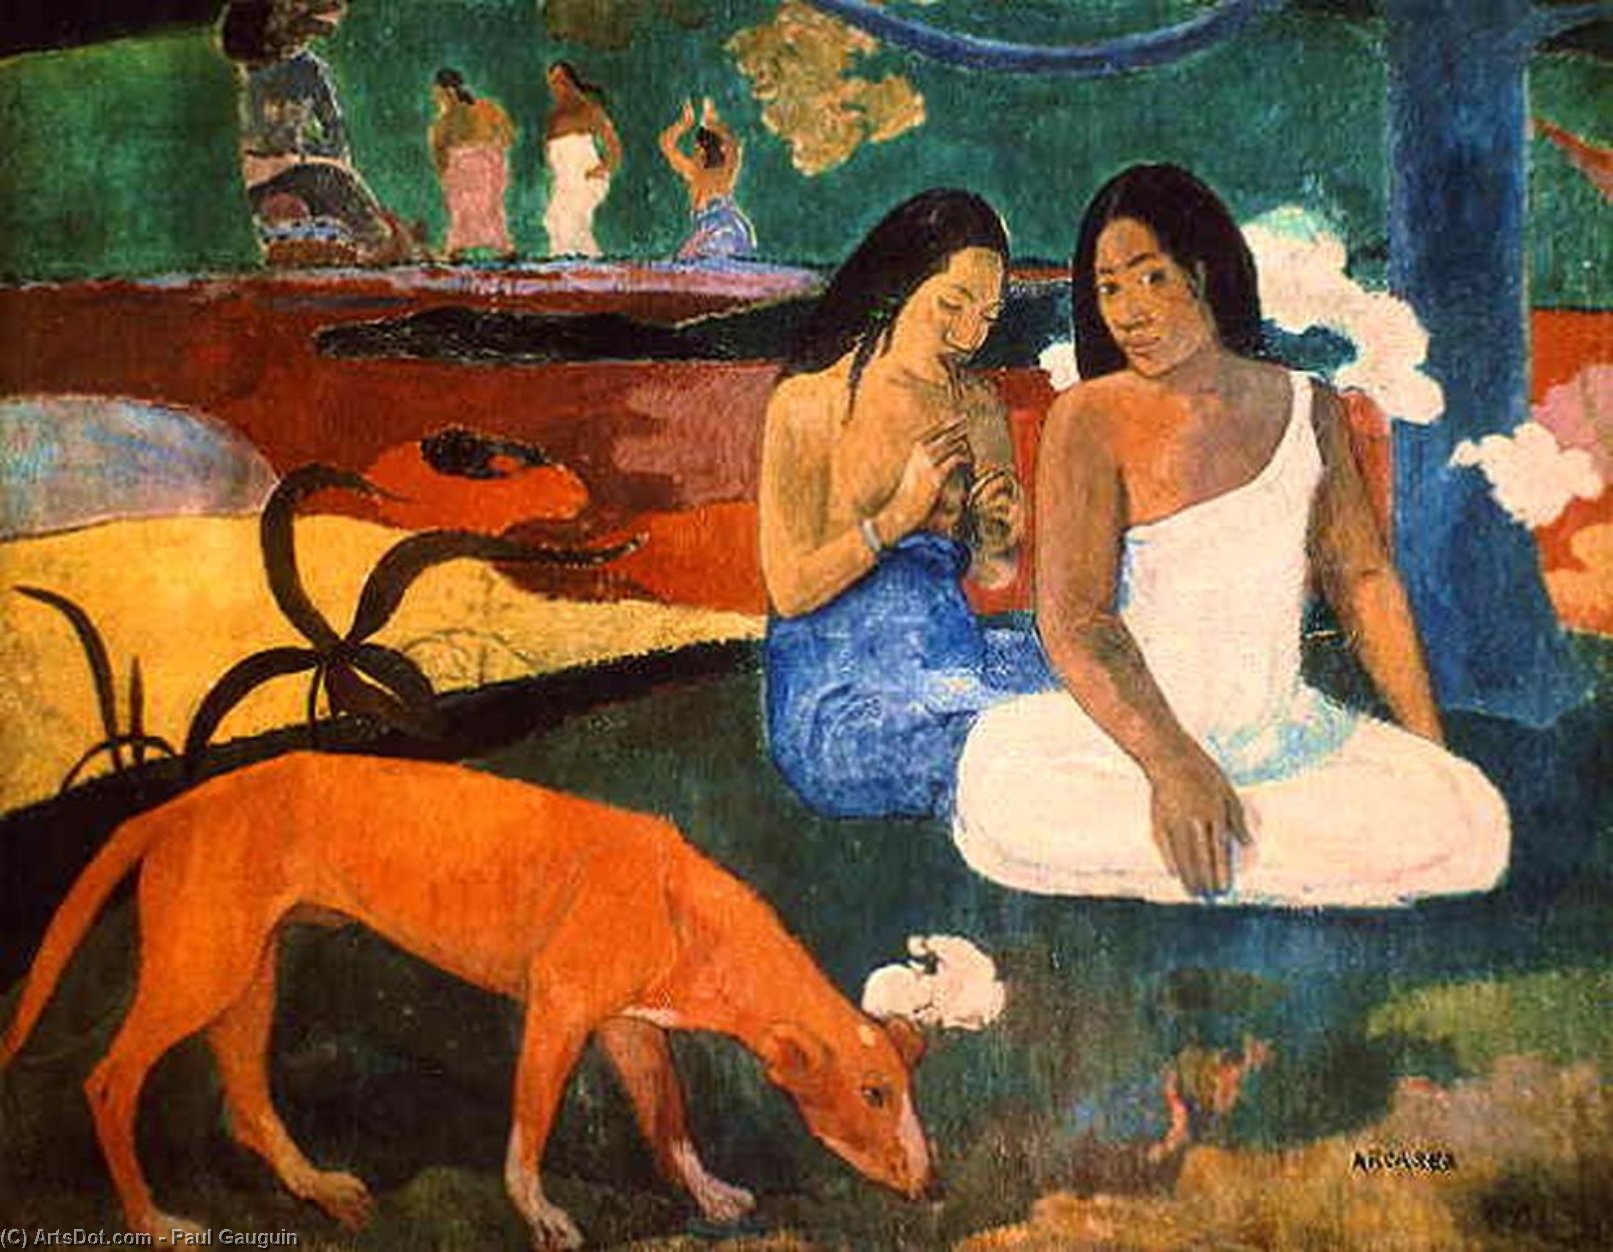 WikiOO.org - Encyclopedia of Fine Arts - Malba, Artwork Paul Gauguin - arearea